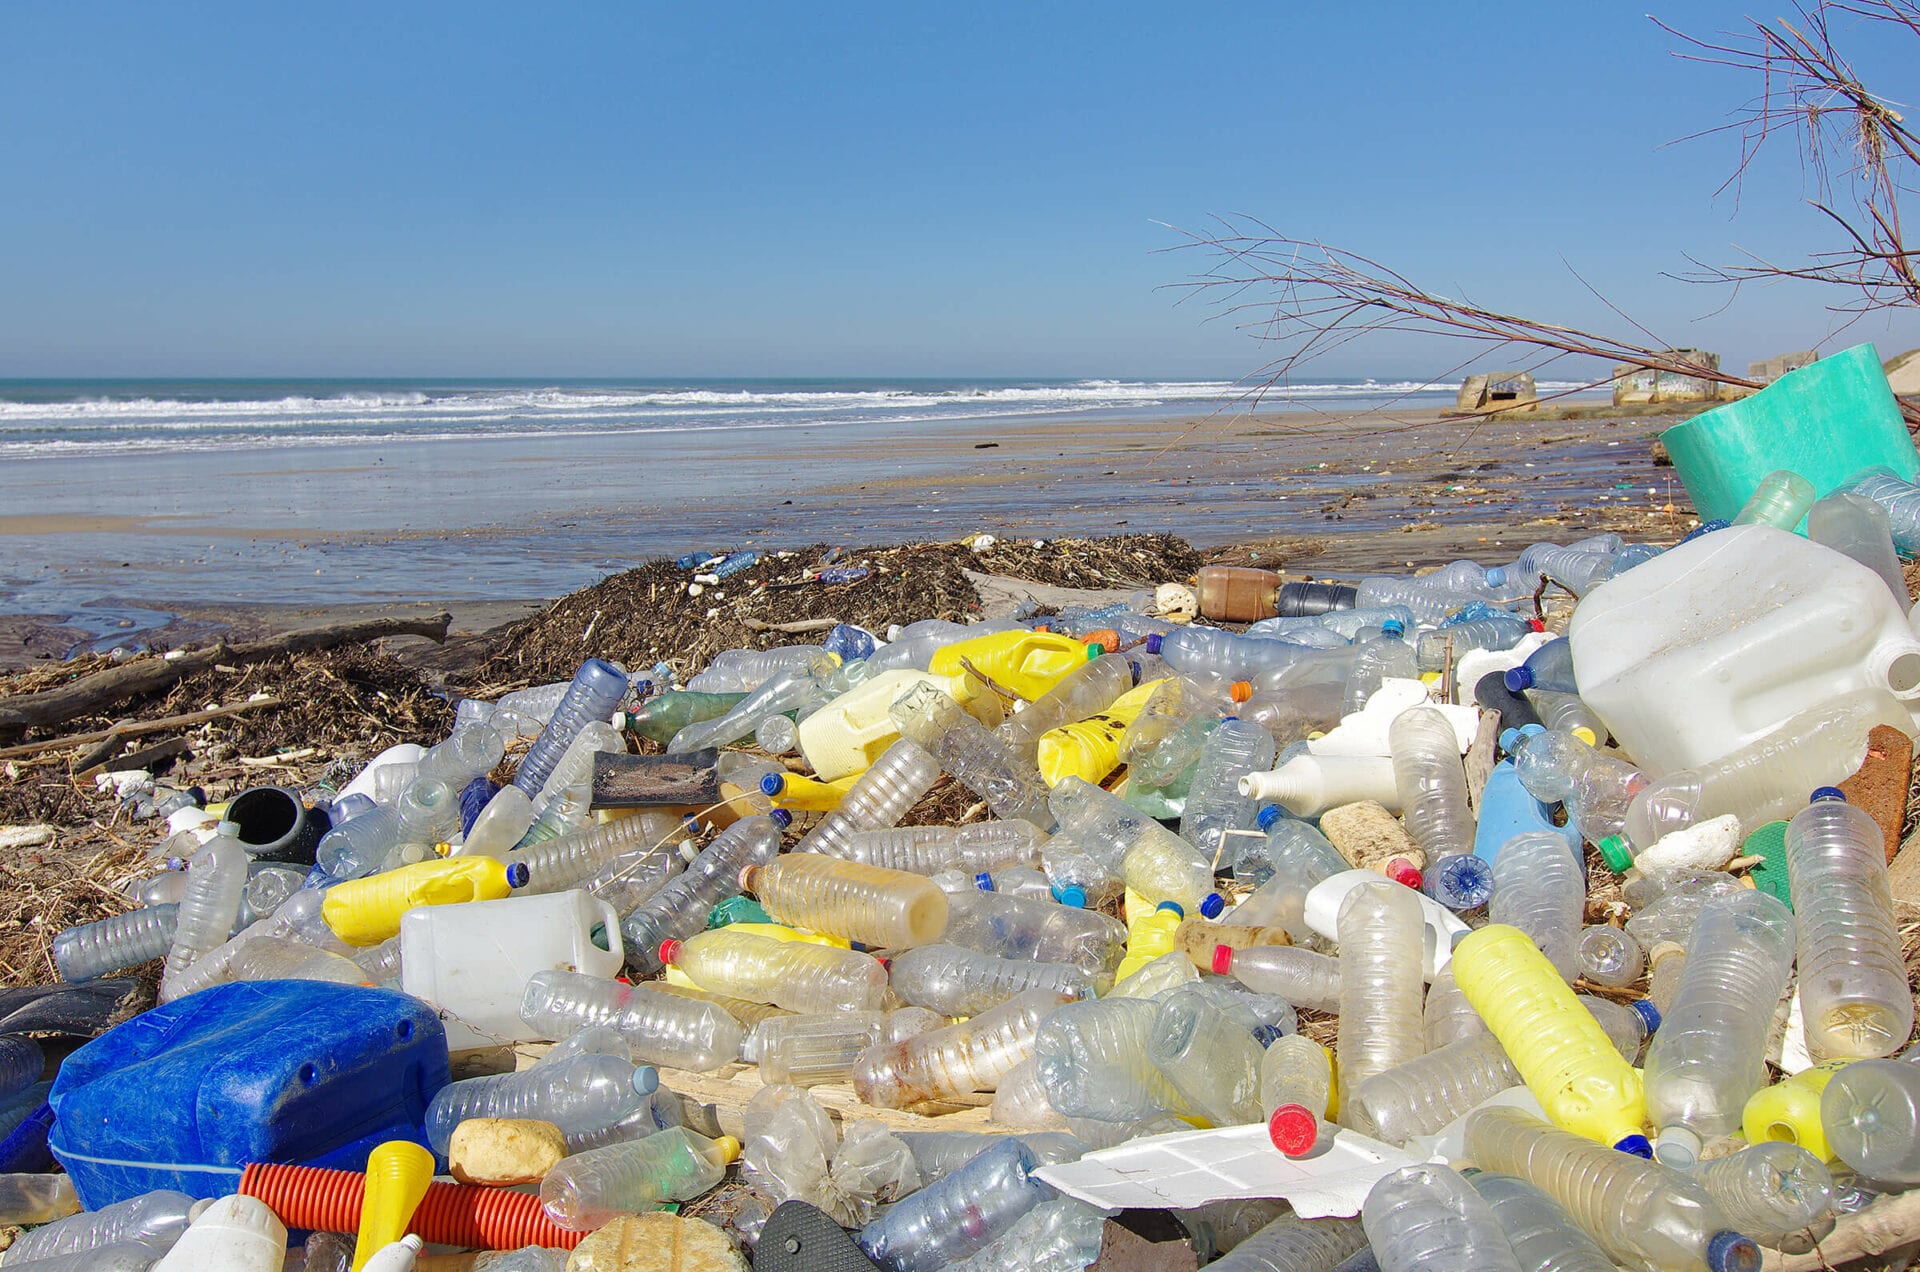 Image of plastics debris